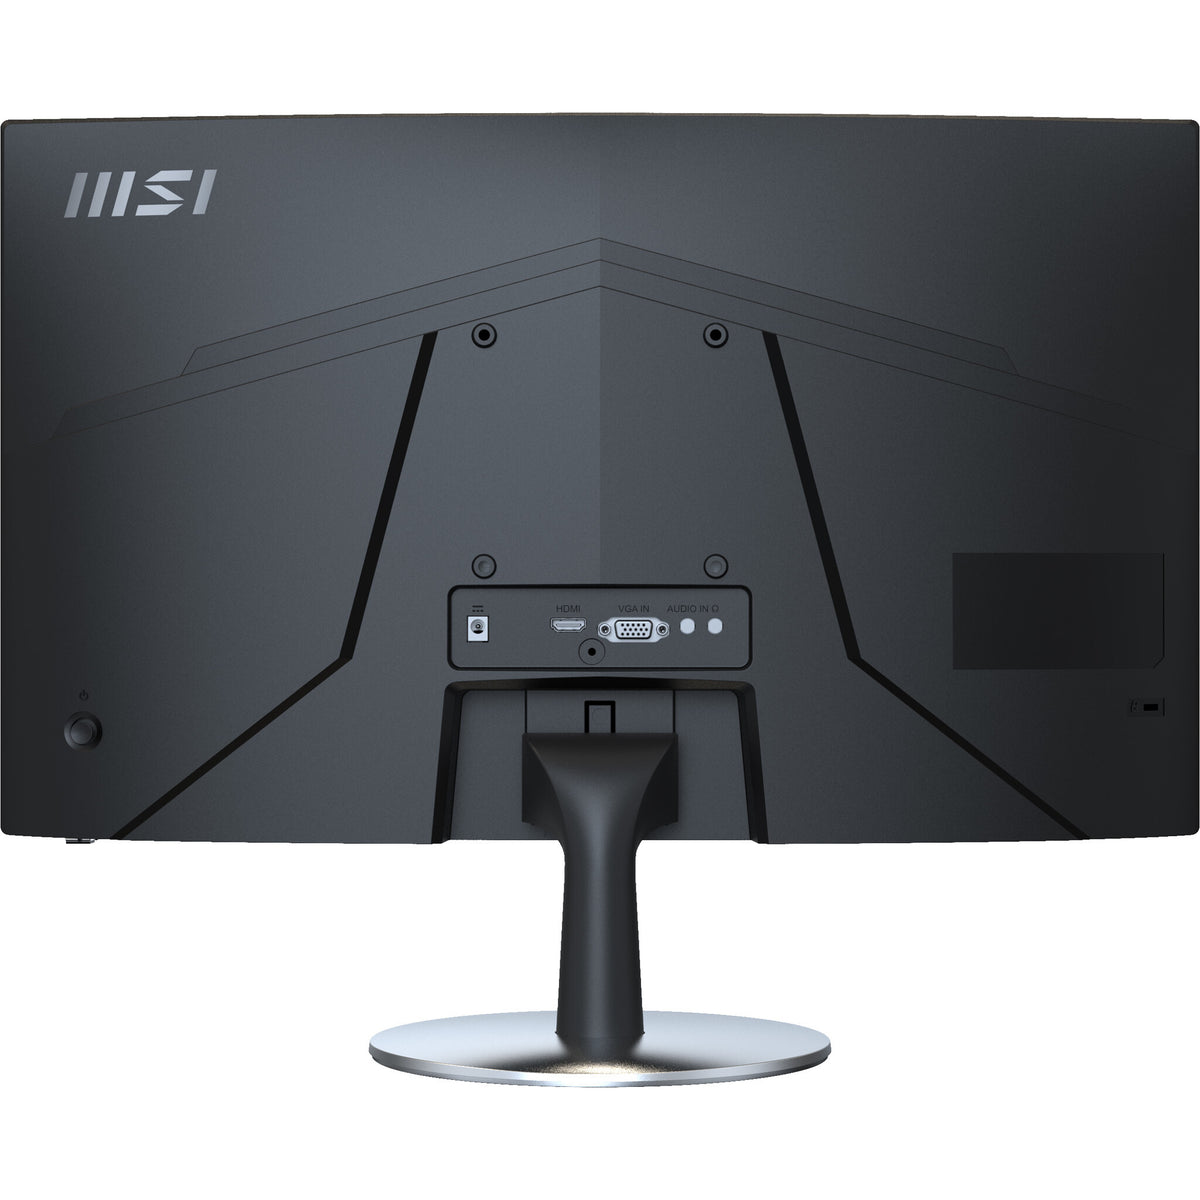 MSI Pro MP242C - 60 cm (23.6&quot;) - 1920 x 1080 pixels FULL HD LED Monitor